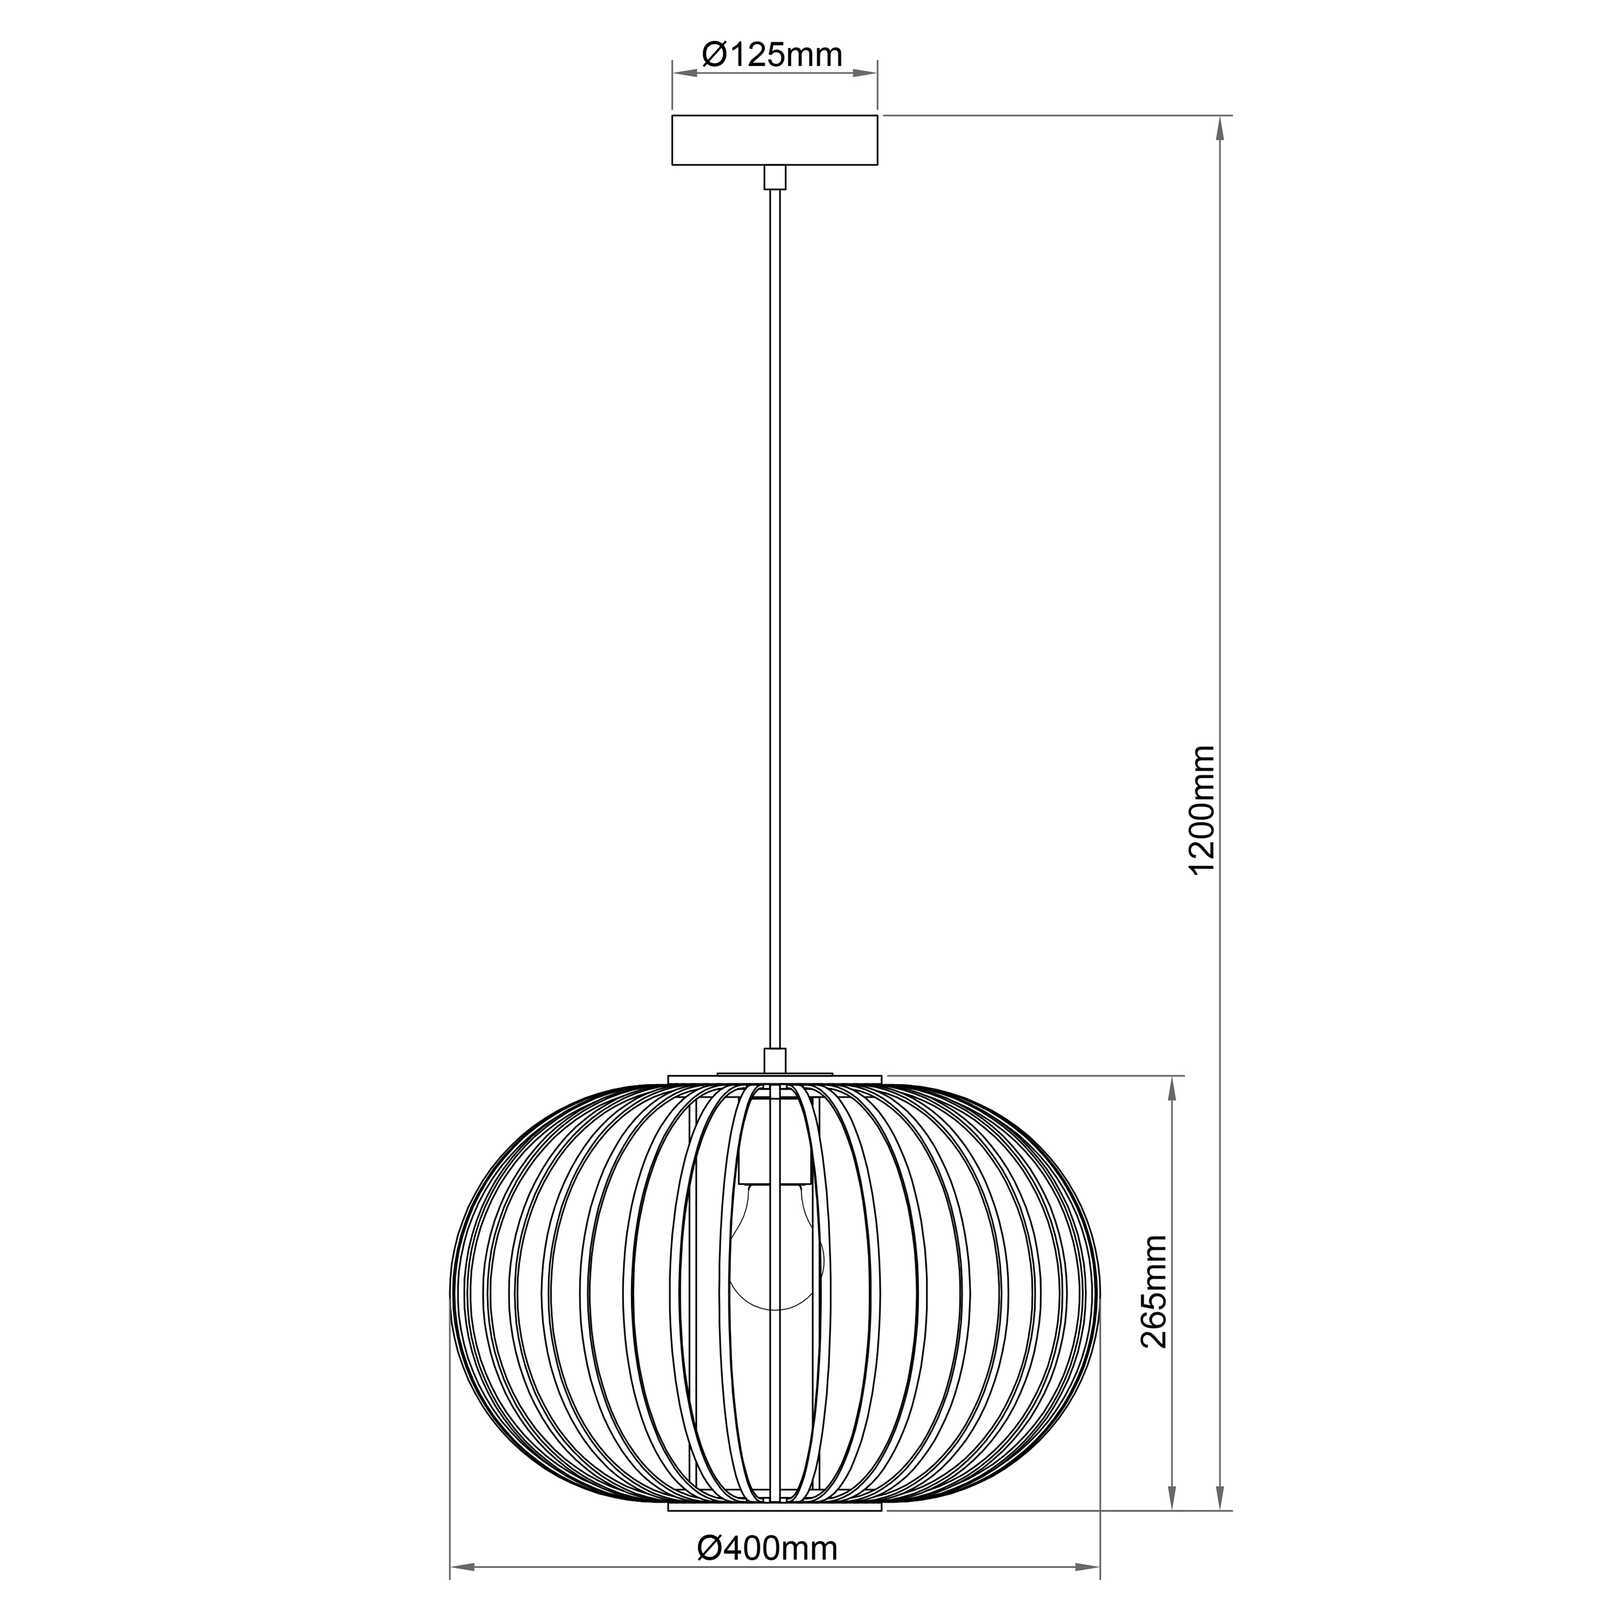             Metalen hanglamp - Franka - Bruin
        